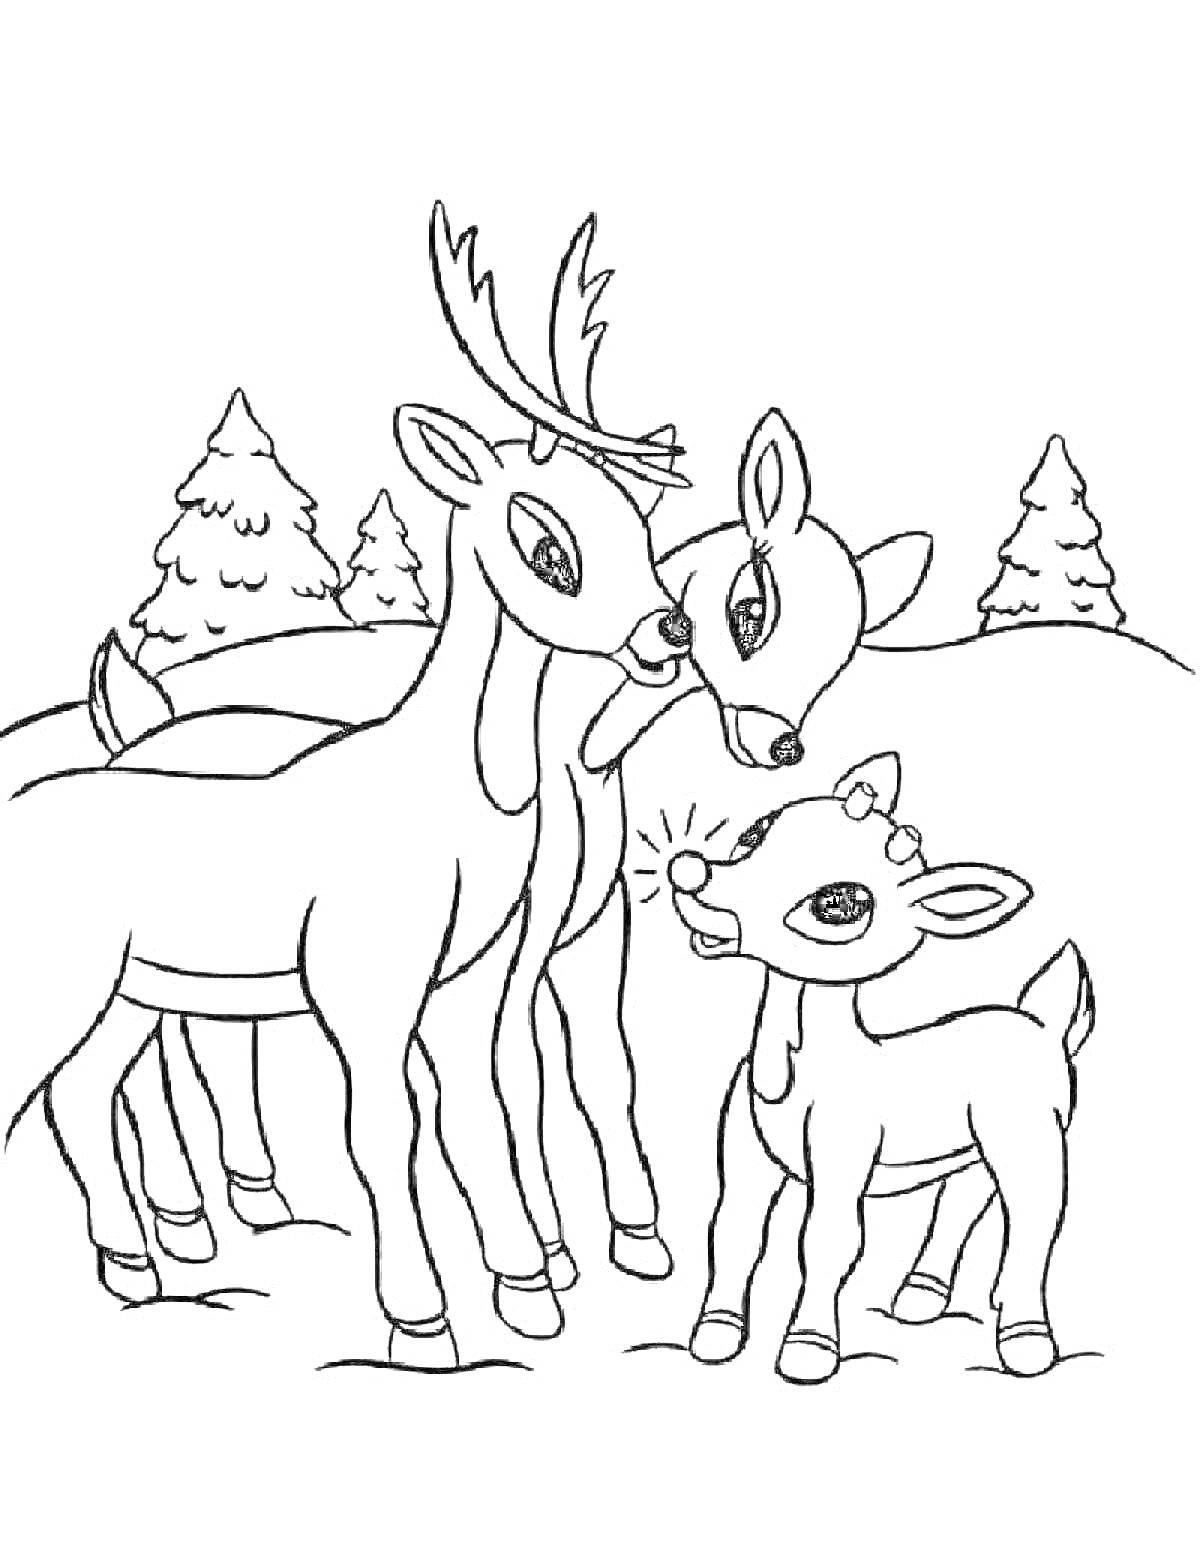 Раскраска Семья оленей на фоне зимнего леса с елями